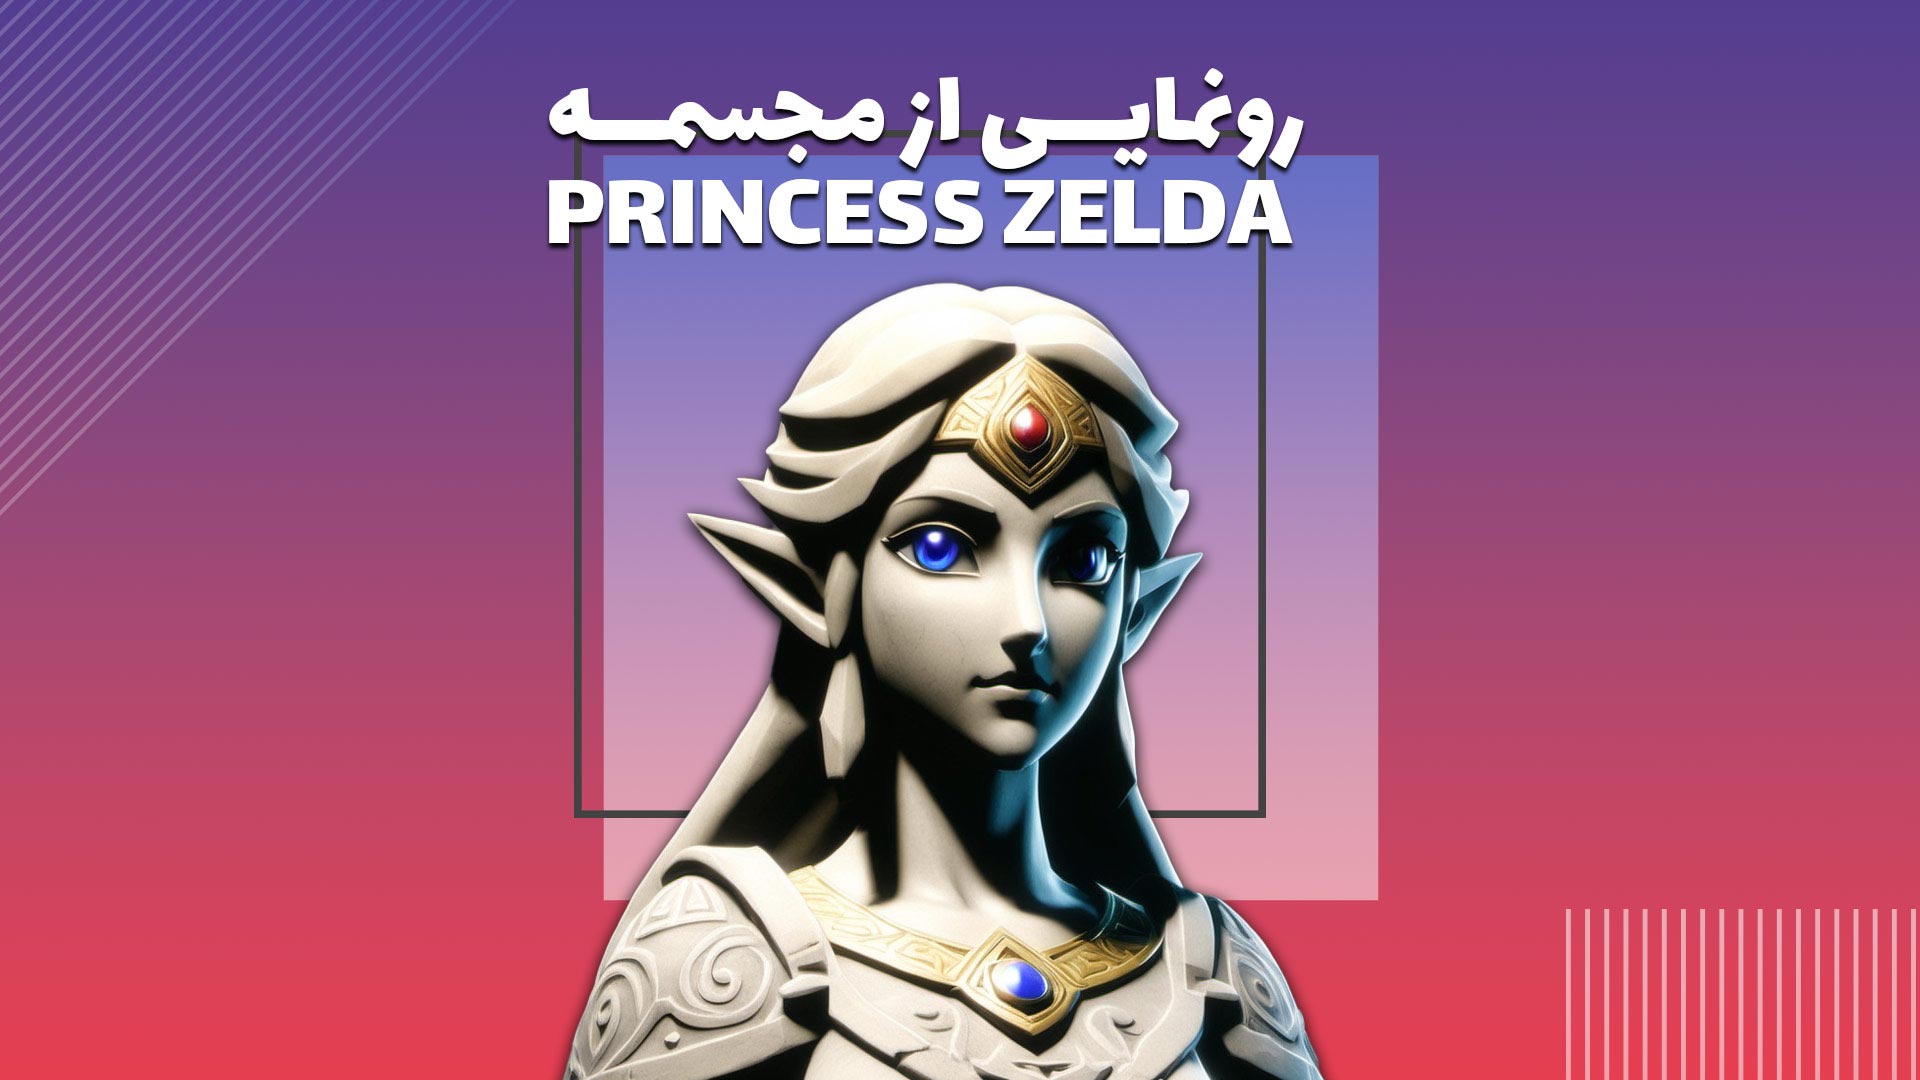 رونمایی از مجسمه ی جدید شخصیت Zelda